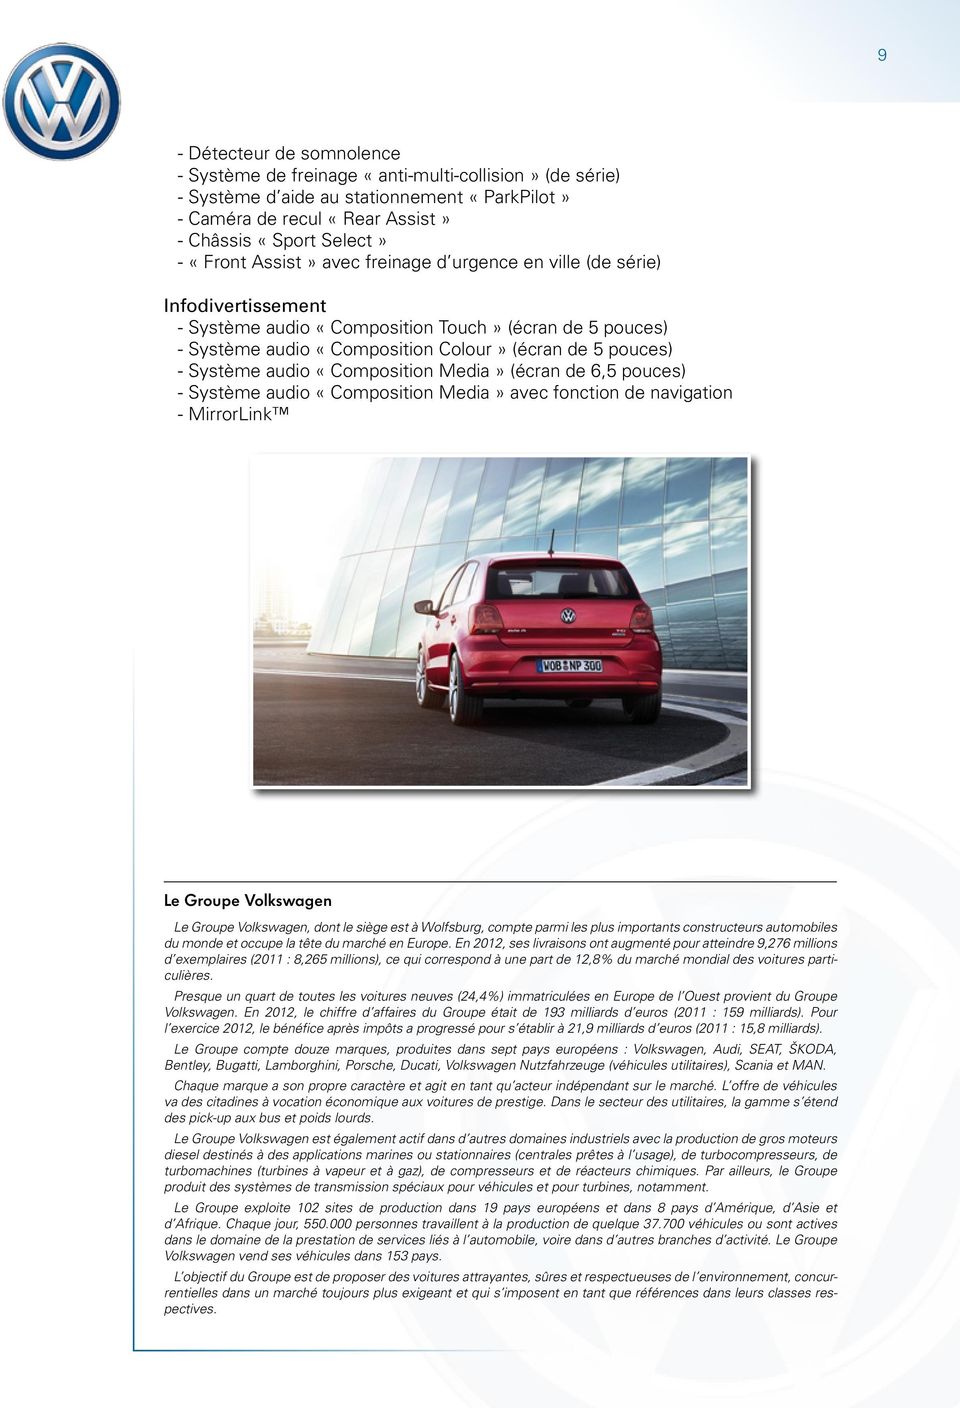 «Composition Media» (écran de 6,5 pouces) - Système audio «Composition Media» avec fonction de navigation - MirrorLink Le Groupe Volkswagen Le Groupe Volkswagen, dont le siège est à Wolfsburg, compte